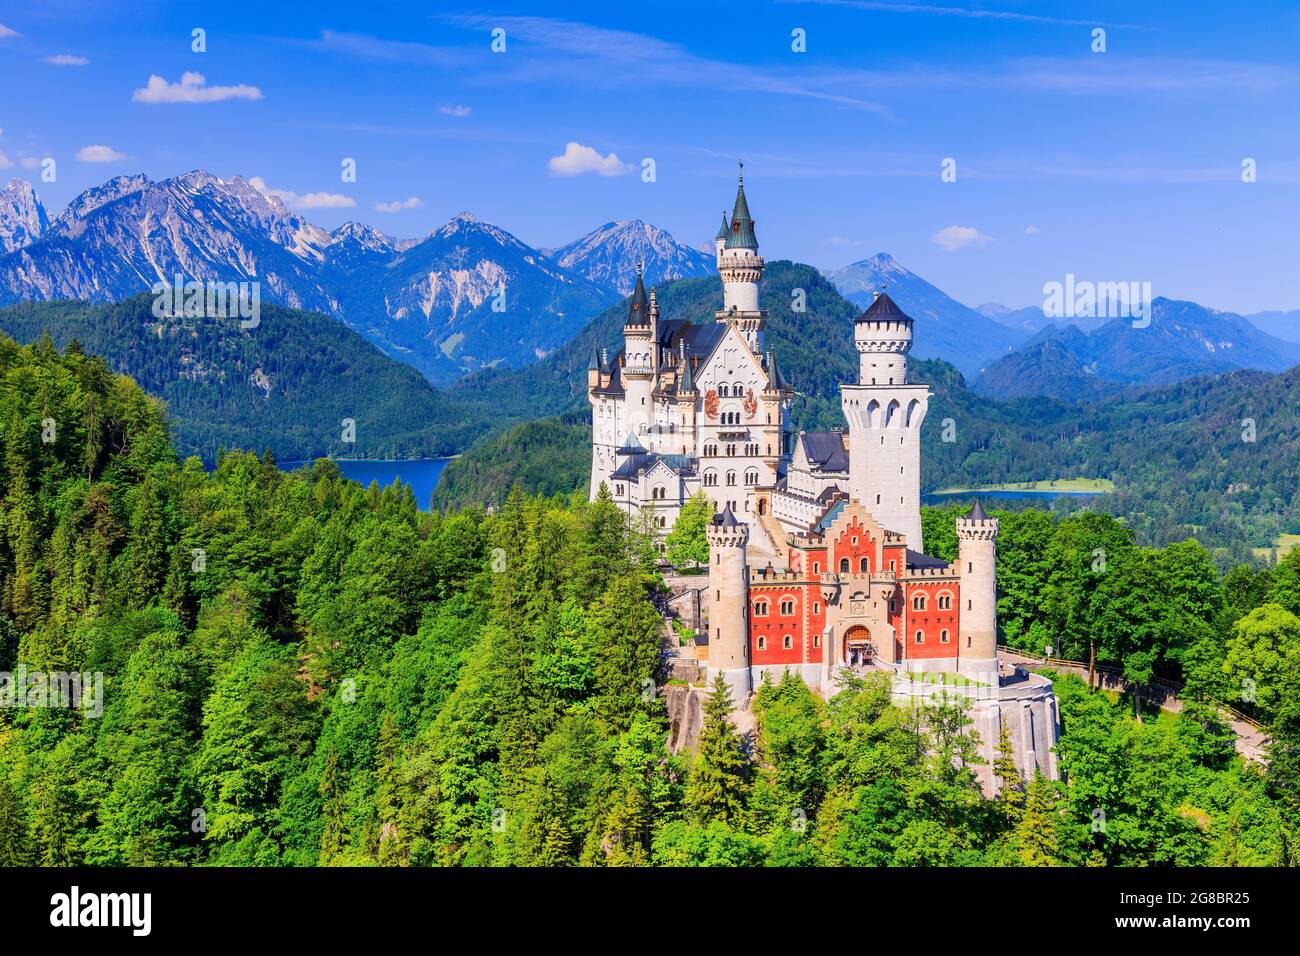 Schloss Neuschwanstein, Deutschland. Vorderansicht des Schlosses mit den bayerischen Alpen im Hintergrund. Stockfoto